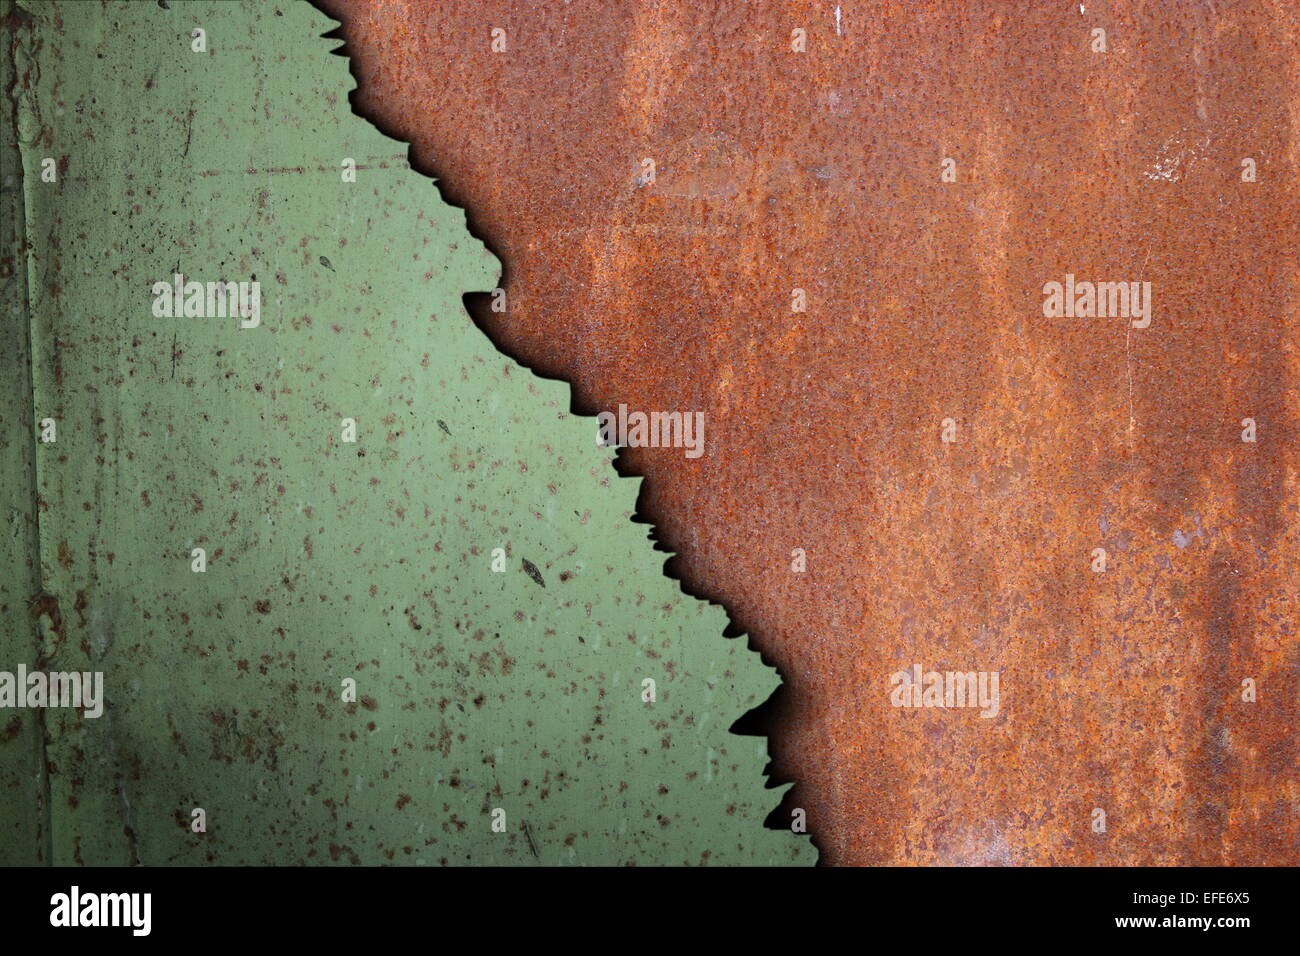 Rusty superficie de metal corroído, texturas de color verde y naranja junto a su diseño Foto de stock